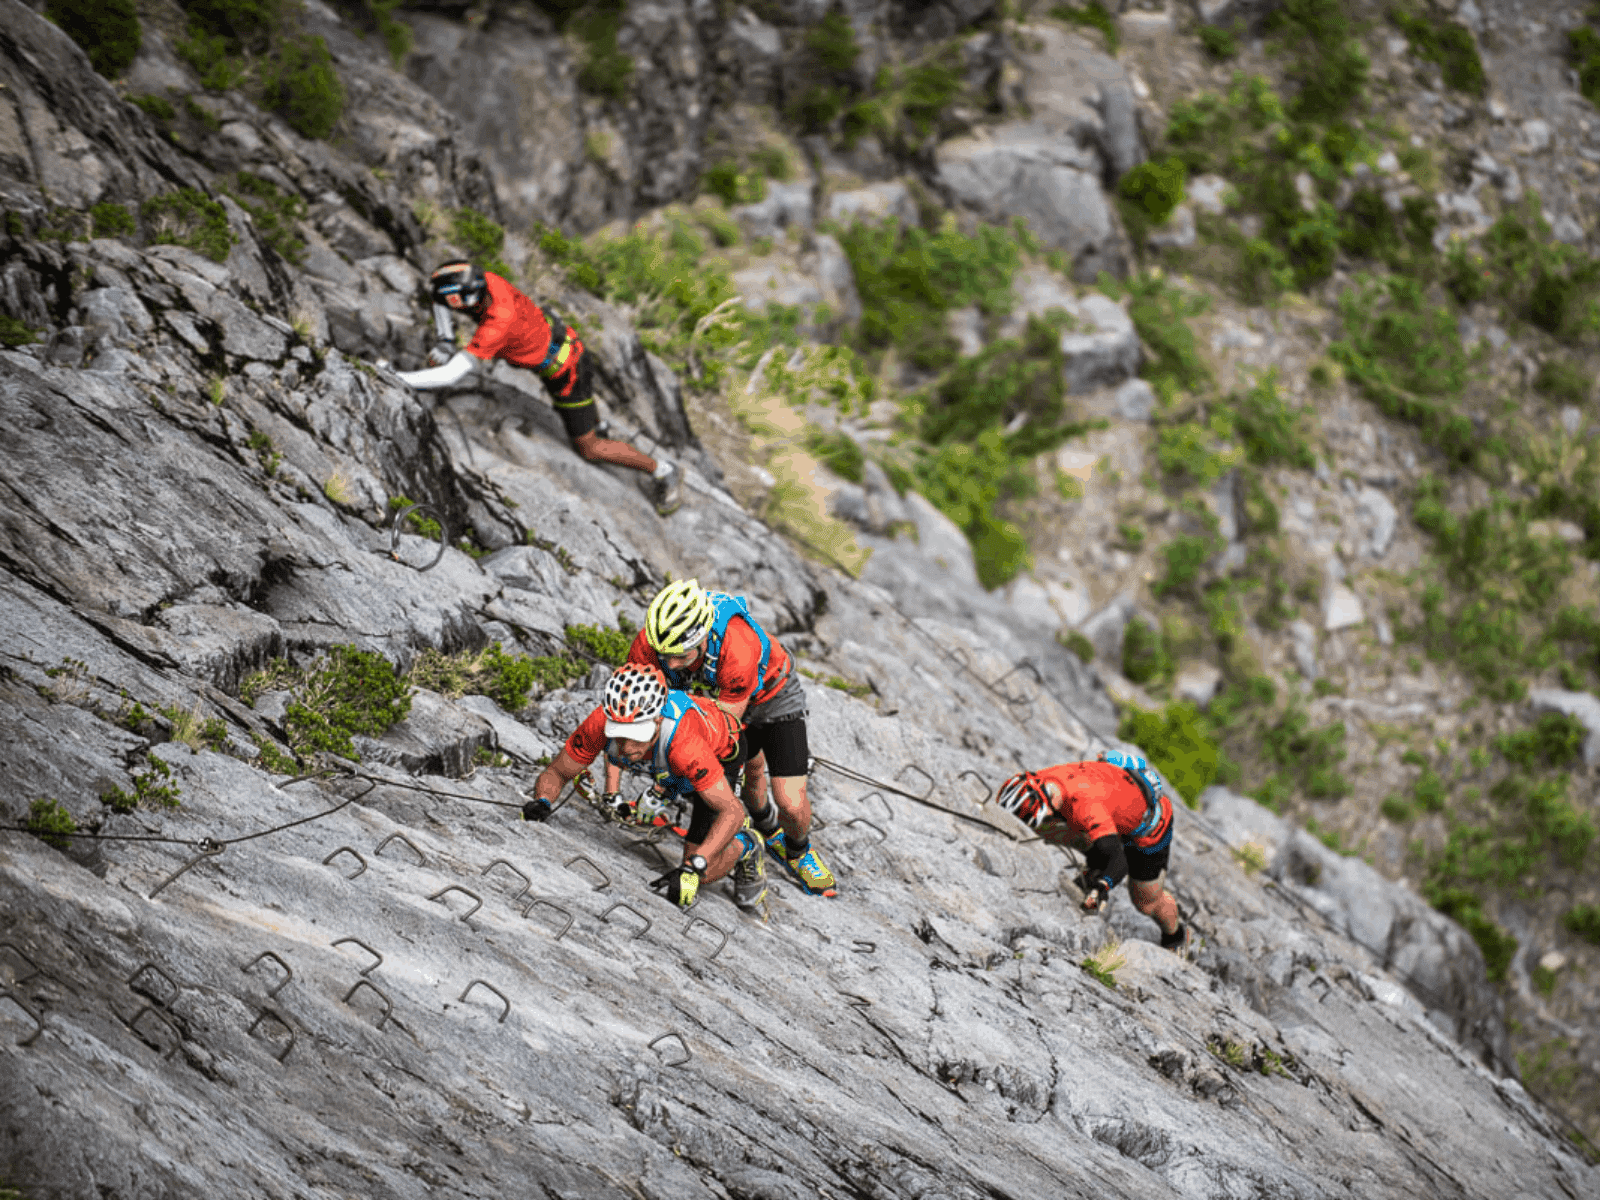 Descripción: Un grupo escalando una montaña rocosa.